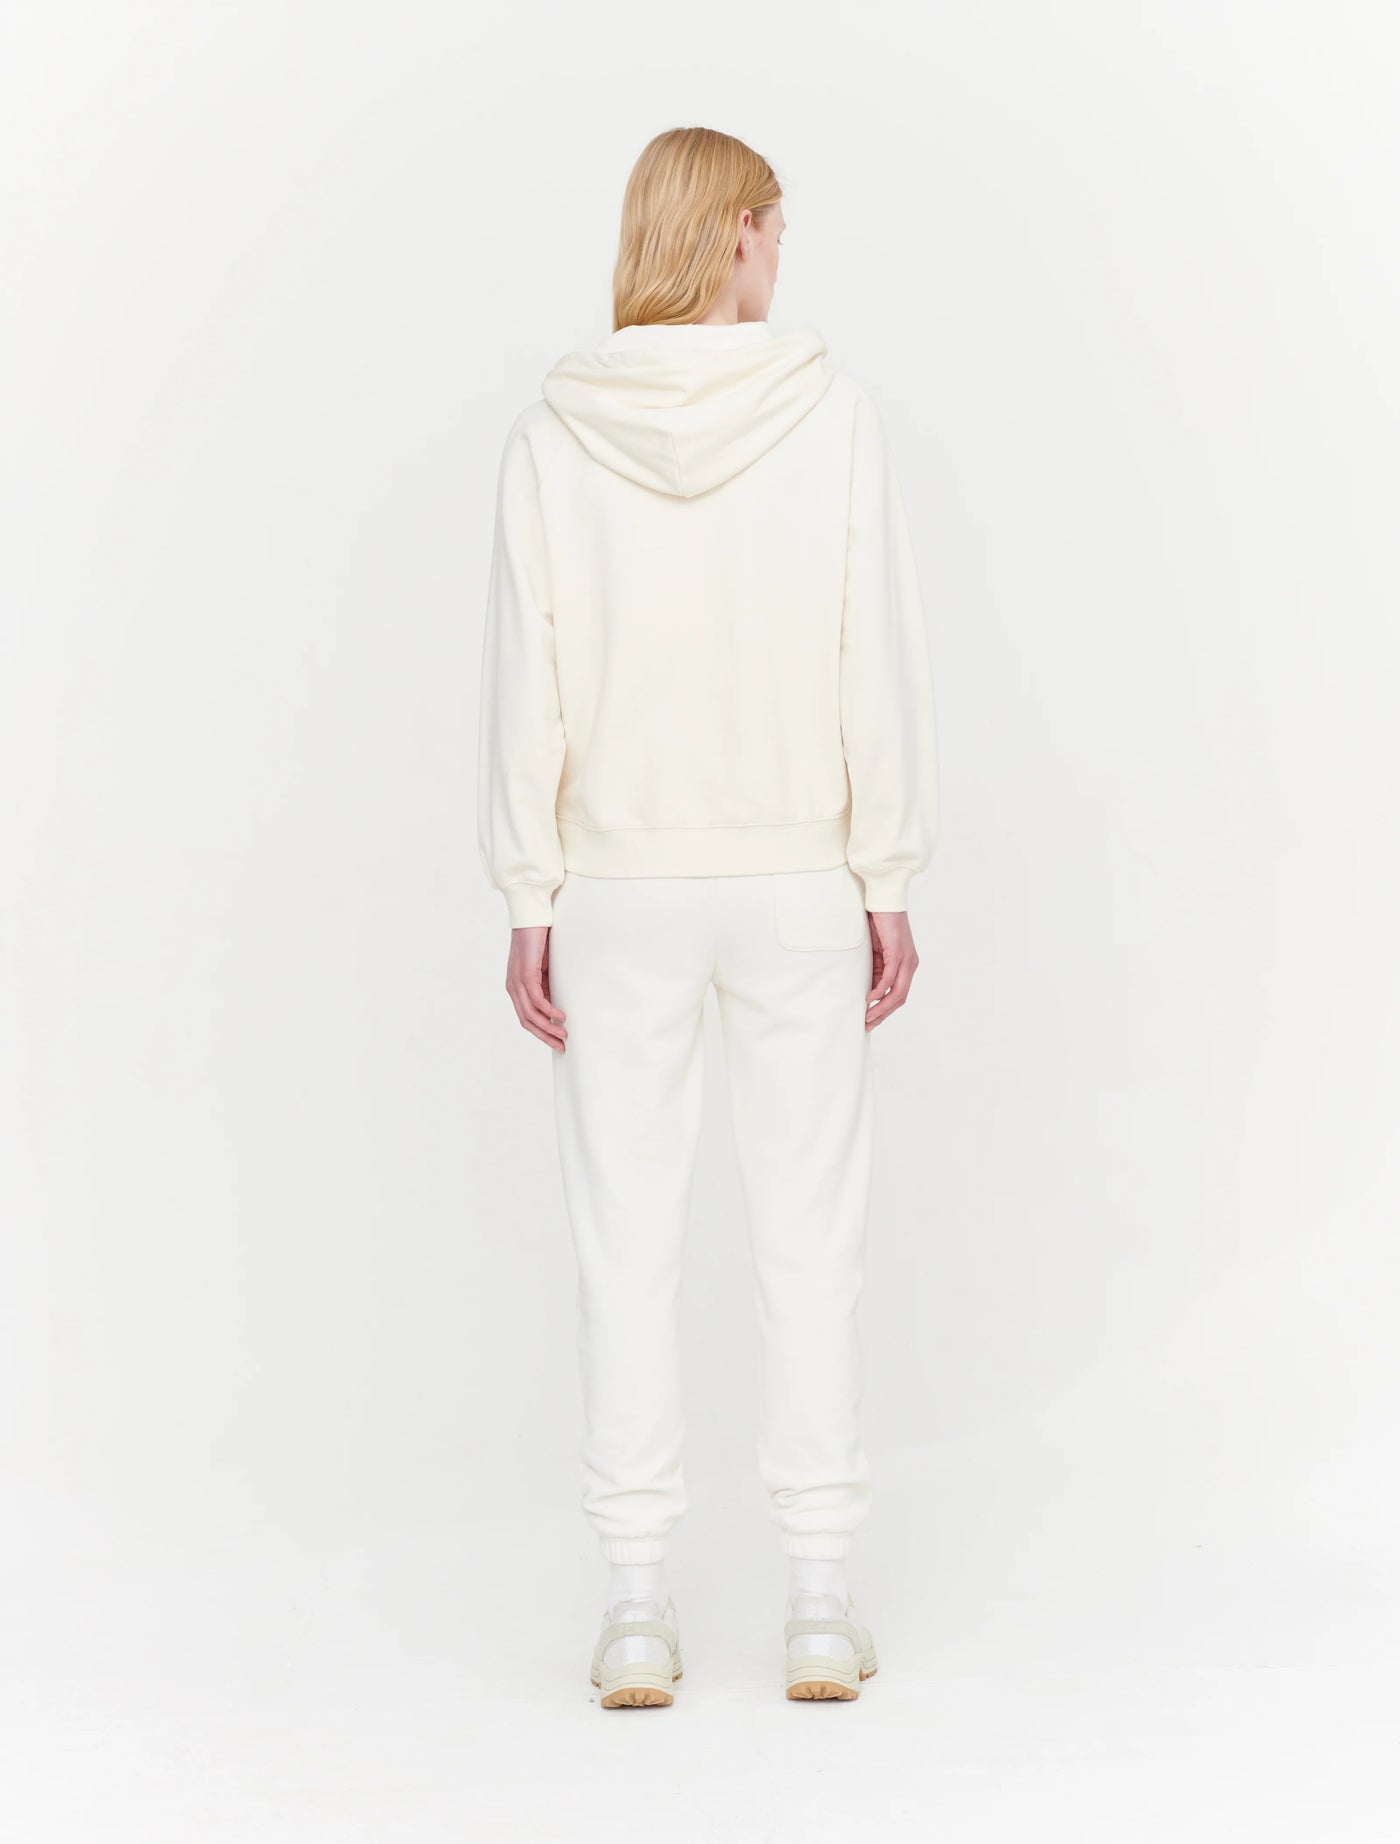 White zip up hoodies